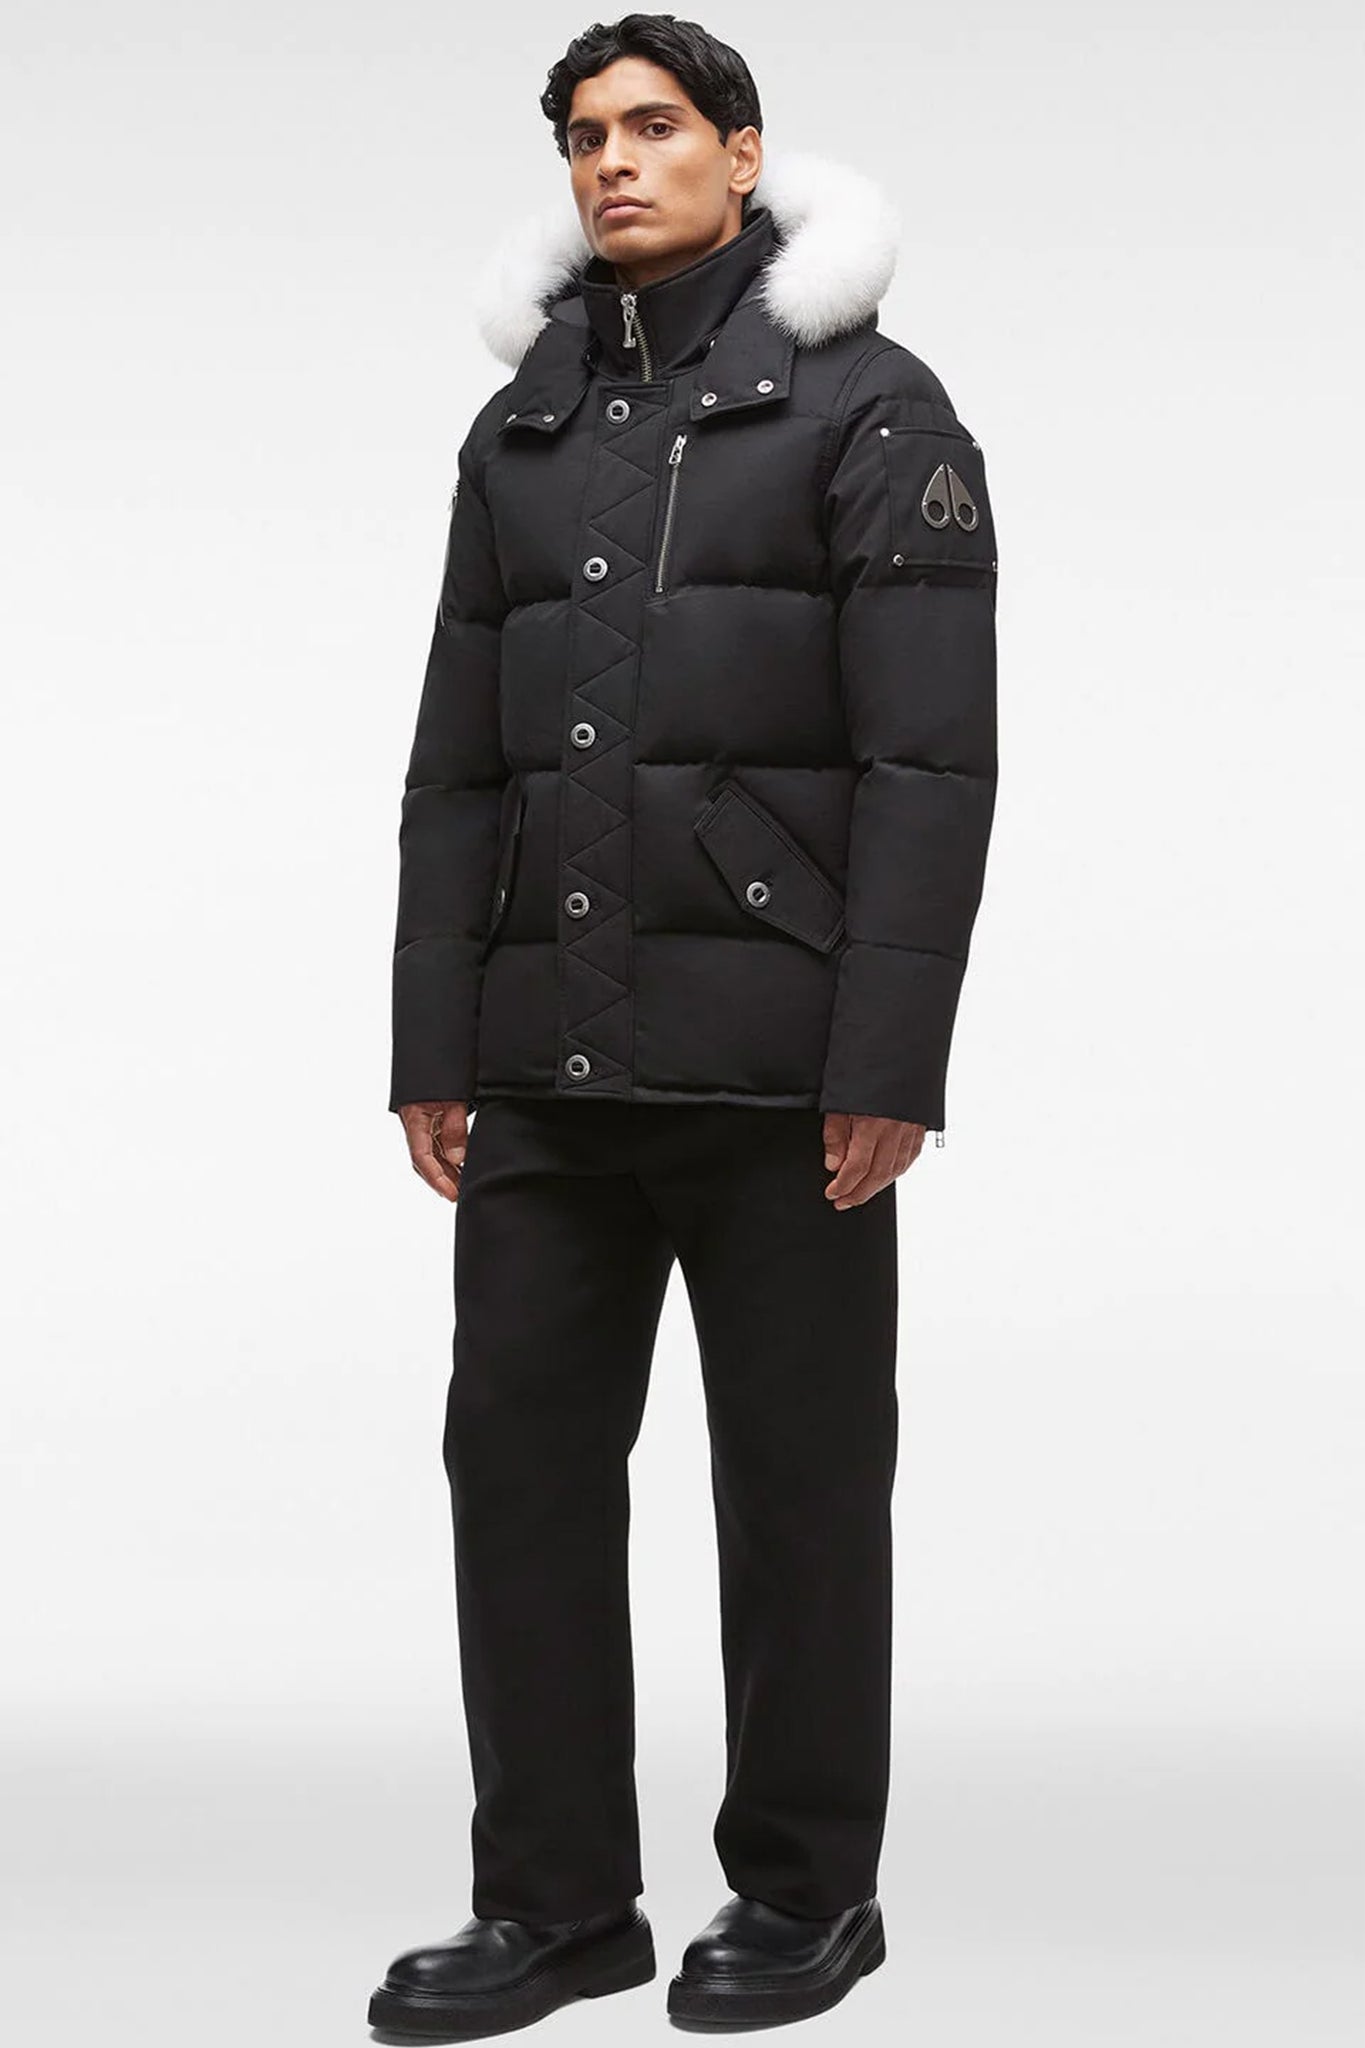 Moose Knuckles Men's 3Q Jacket in Black with Natural Fur